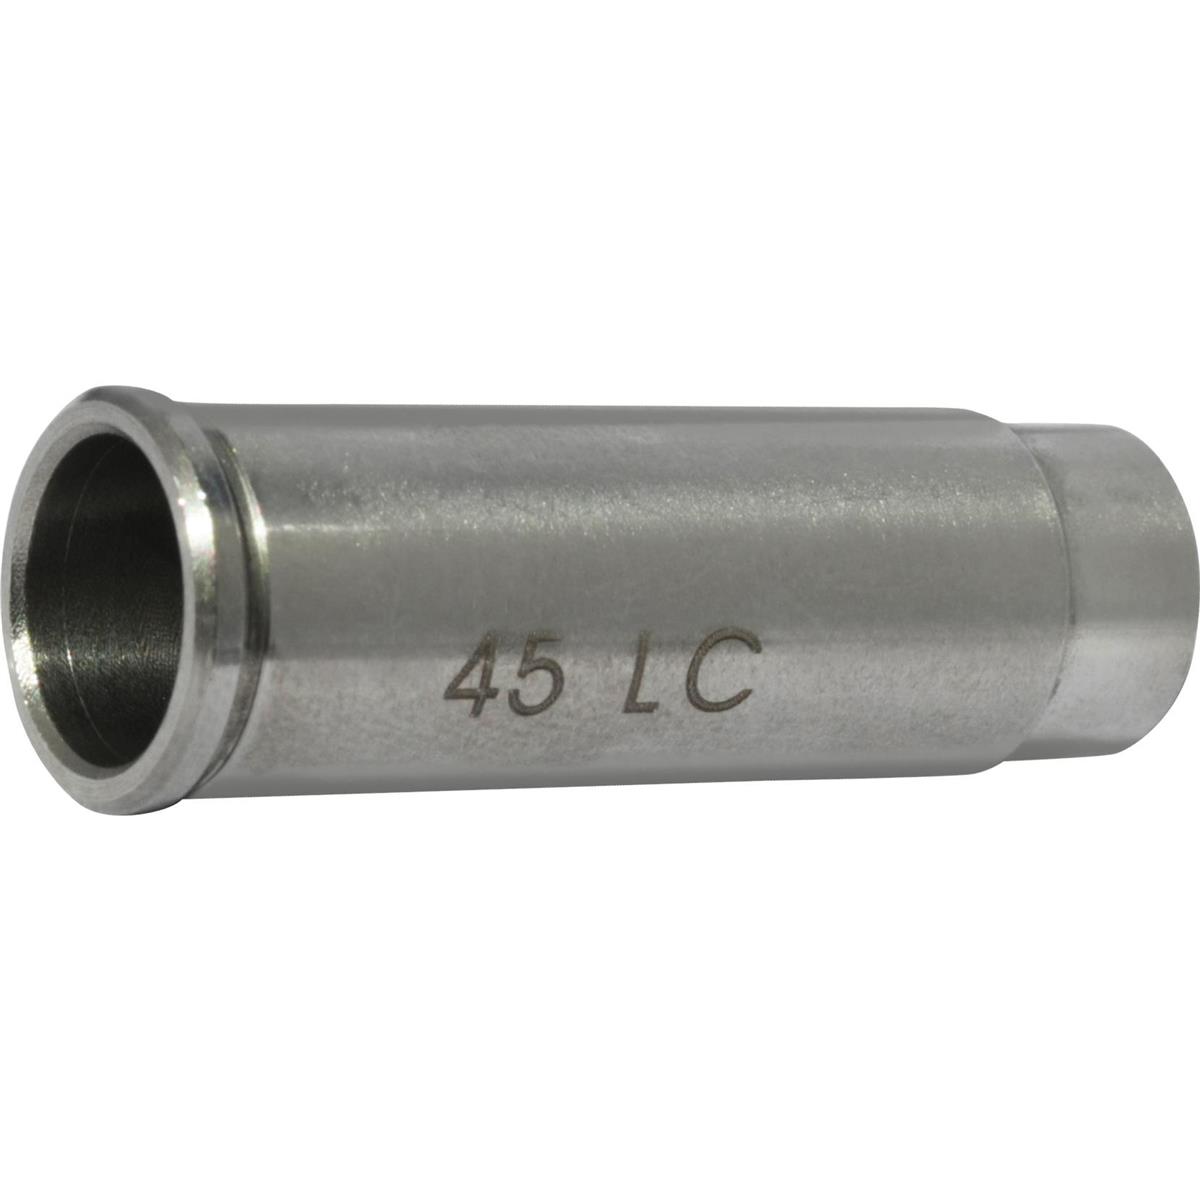 Image of Laser Ammo .45 Long Colt Adapter Ring for SureStrike Laser Cartridge